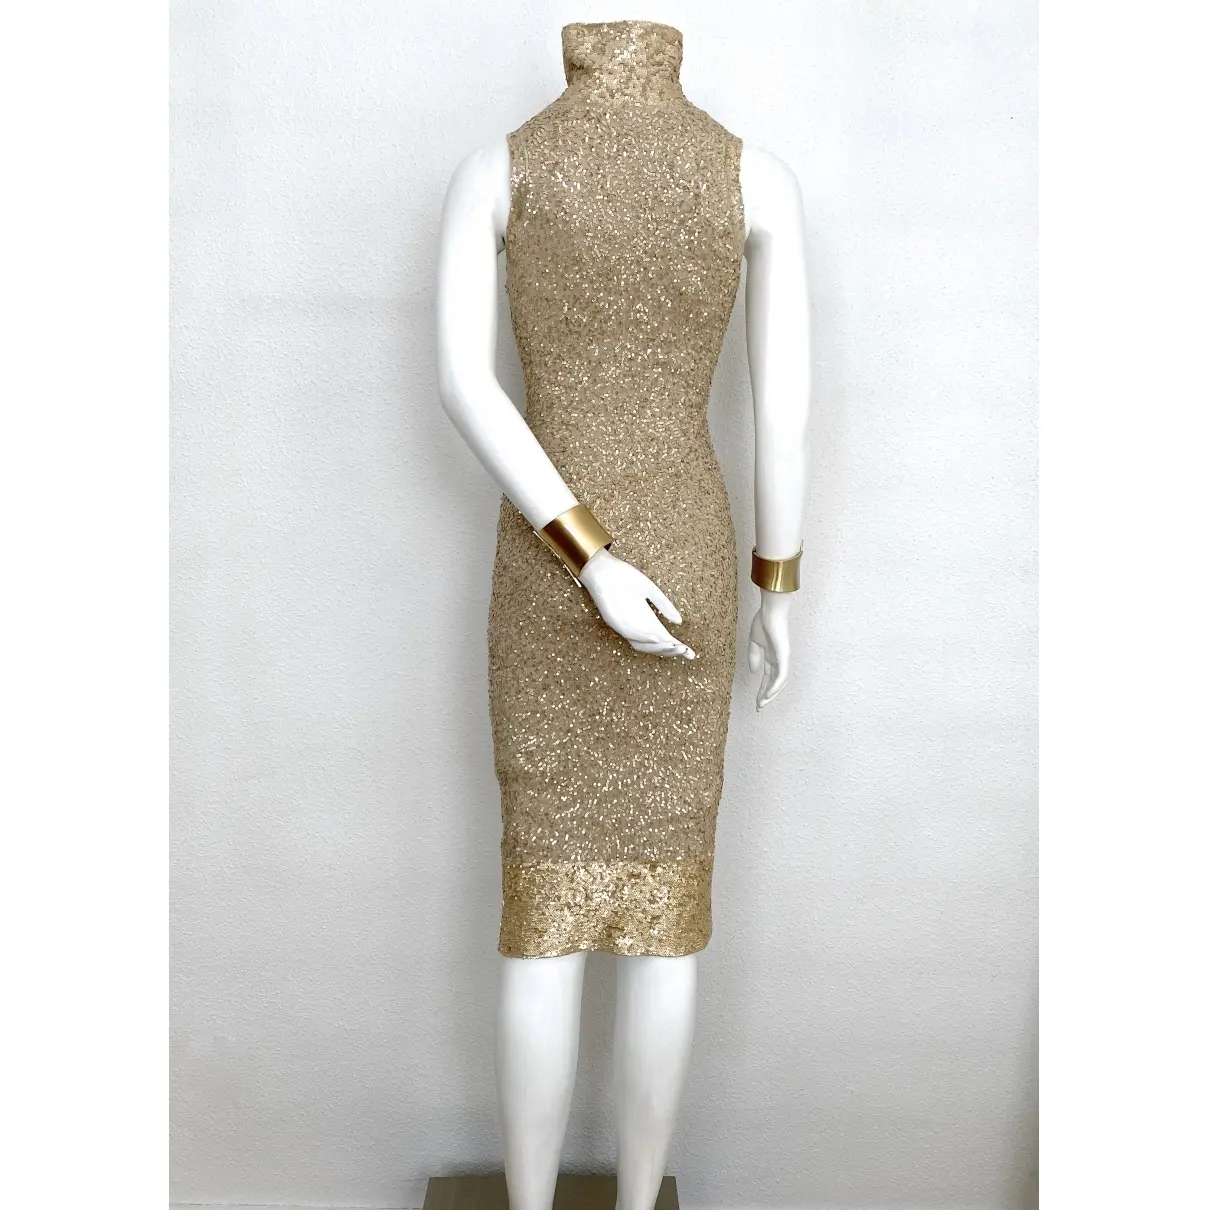 Cashmere dress Donna Karan - Vintage